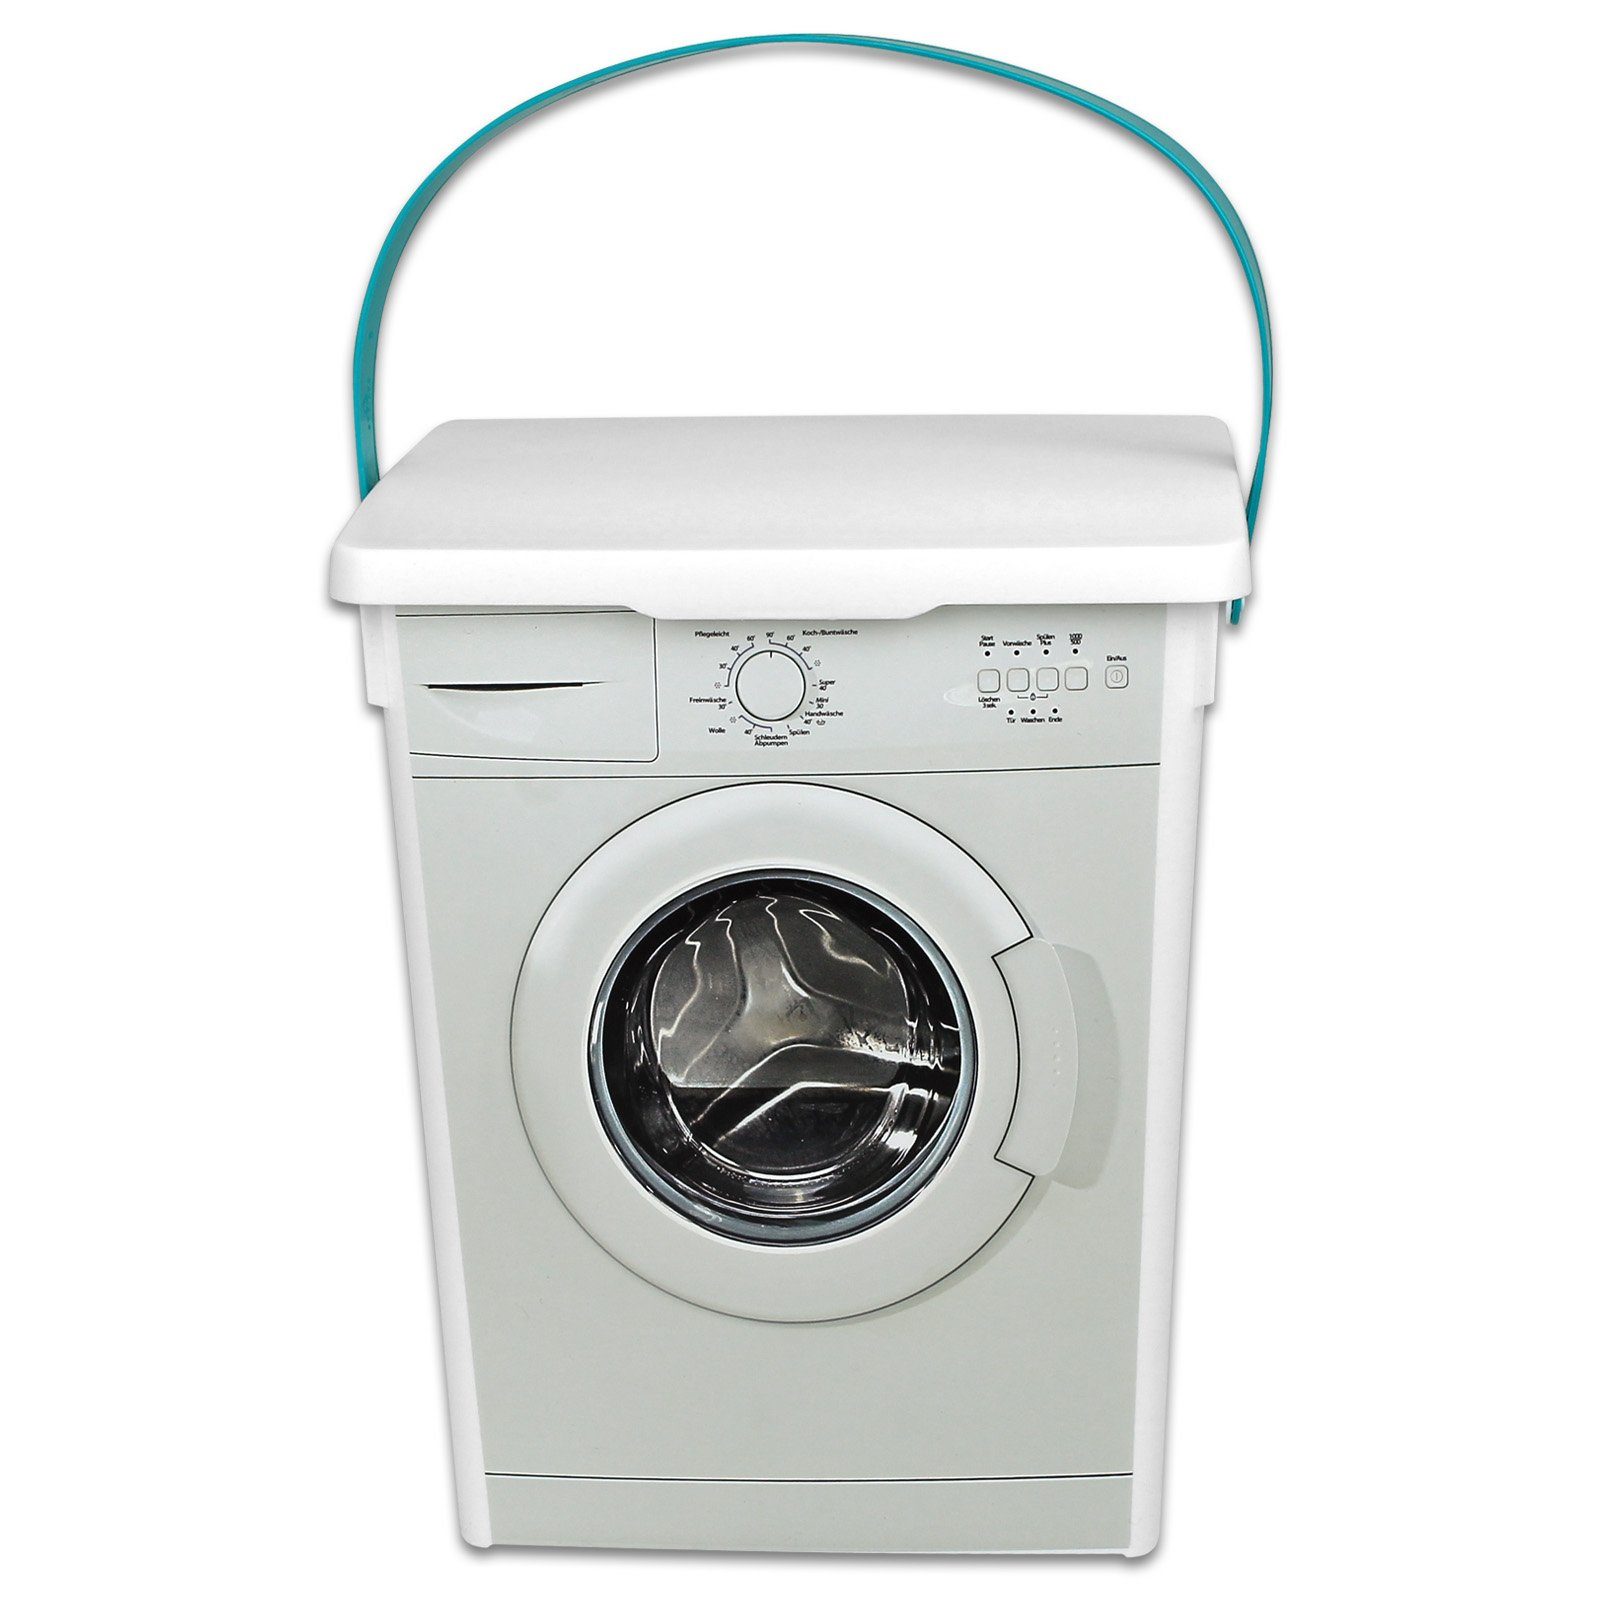 Koopman Aufbewahrungsbox Waschpulver Box 5L Aufbewahrung Kunststoff, Waschmittelbox Waschpulverbehälter Waschmitteldose Wäscheklammerbox